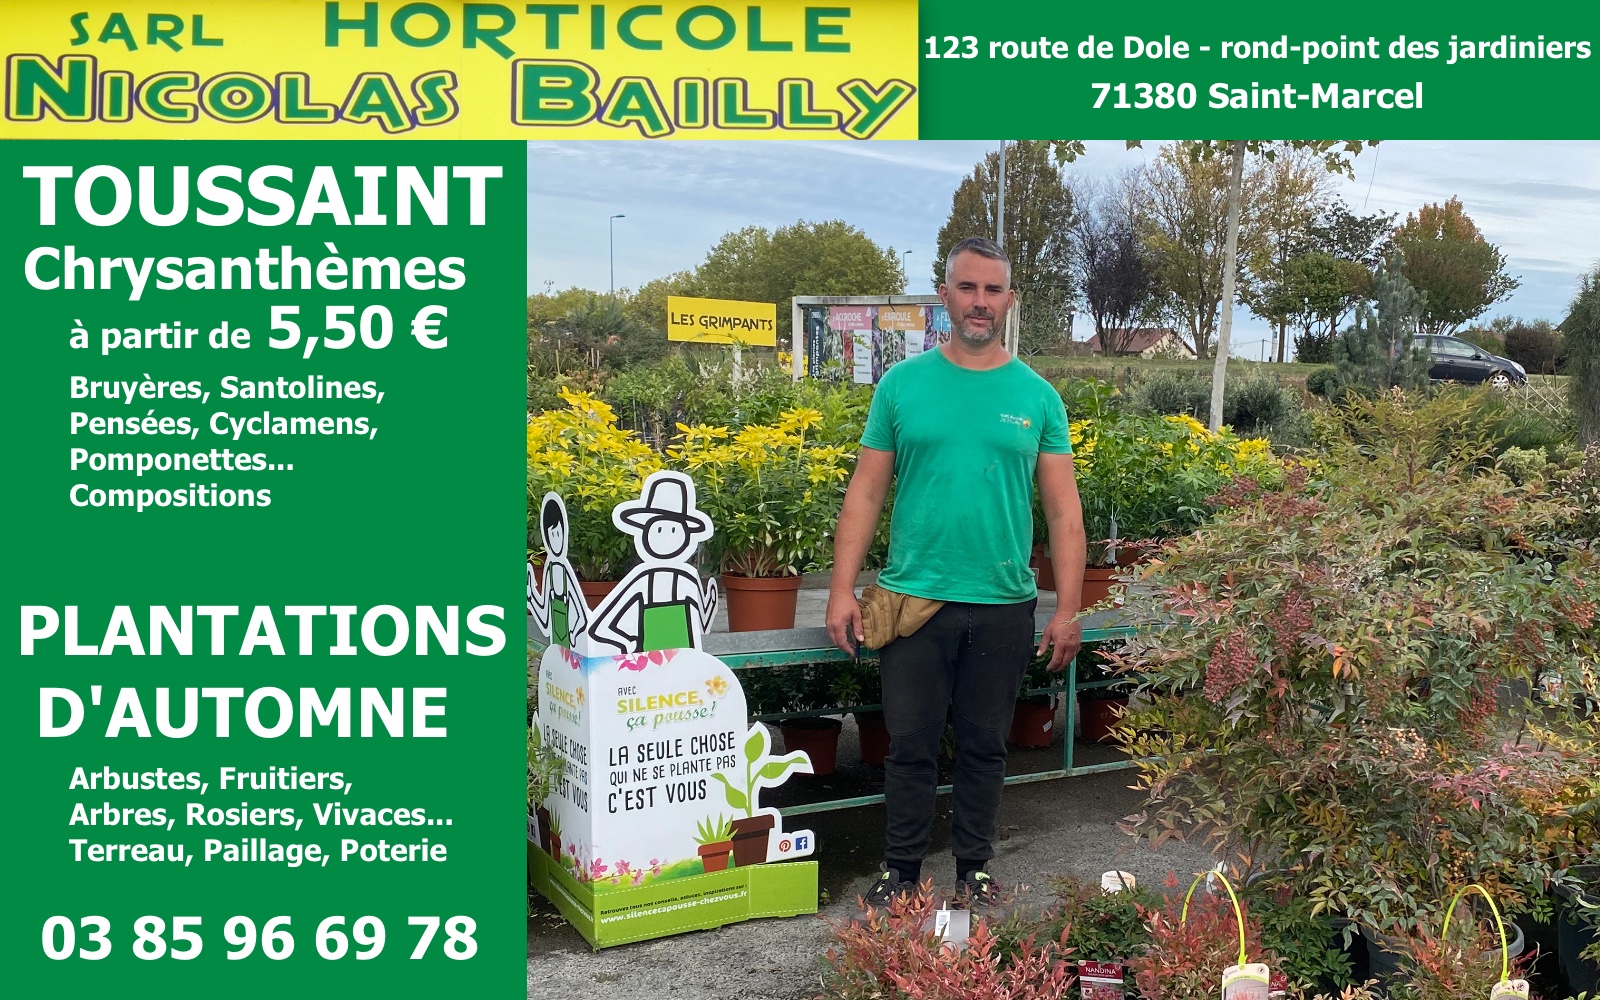 Ville de Cormeilles-en-Parisis - 🪴 BOURSE AUX PLANTES 🪴 Venez échanger  vos graines, végétaux, bulbes, conseils, en toute convivialité, le samedi 8  octobre de 9h à 13h aux Bois Rochefort 𝟭 𝗽𝗹𝗮𝗻𝘁𝗲